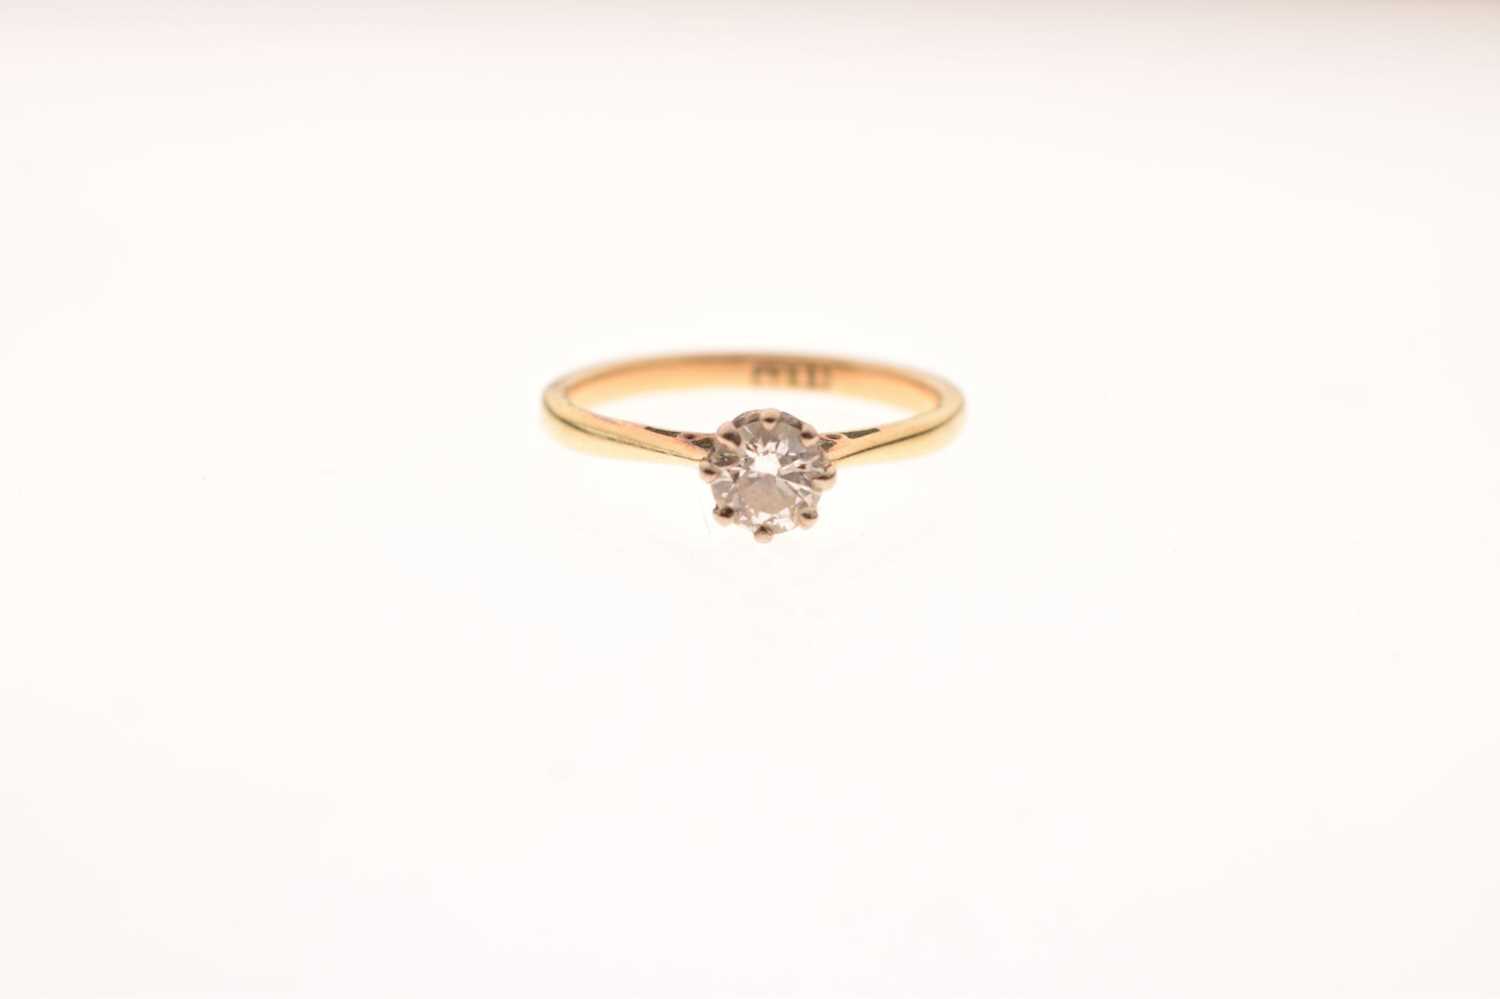 Single stone diamond ring - Image 6 of 6